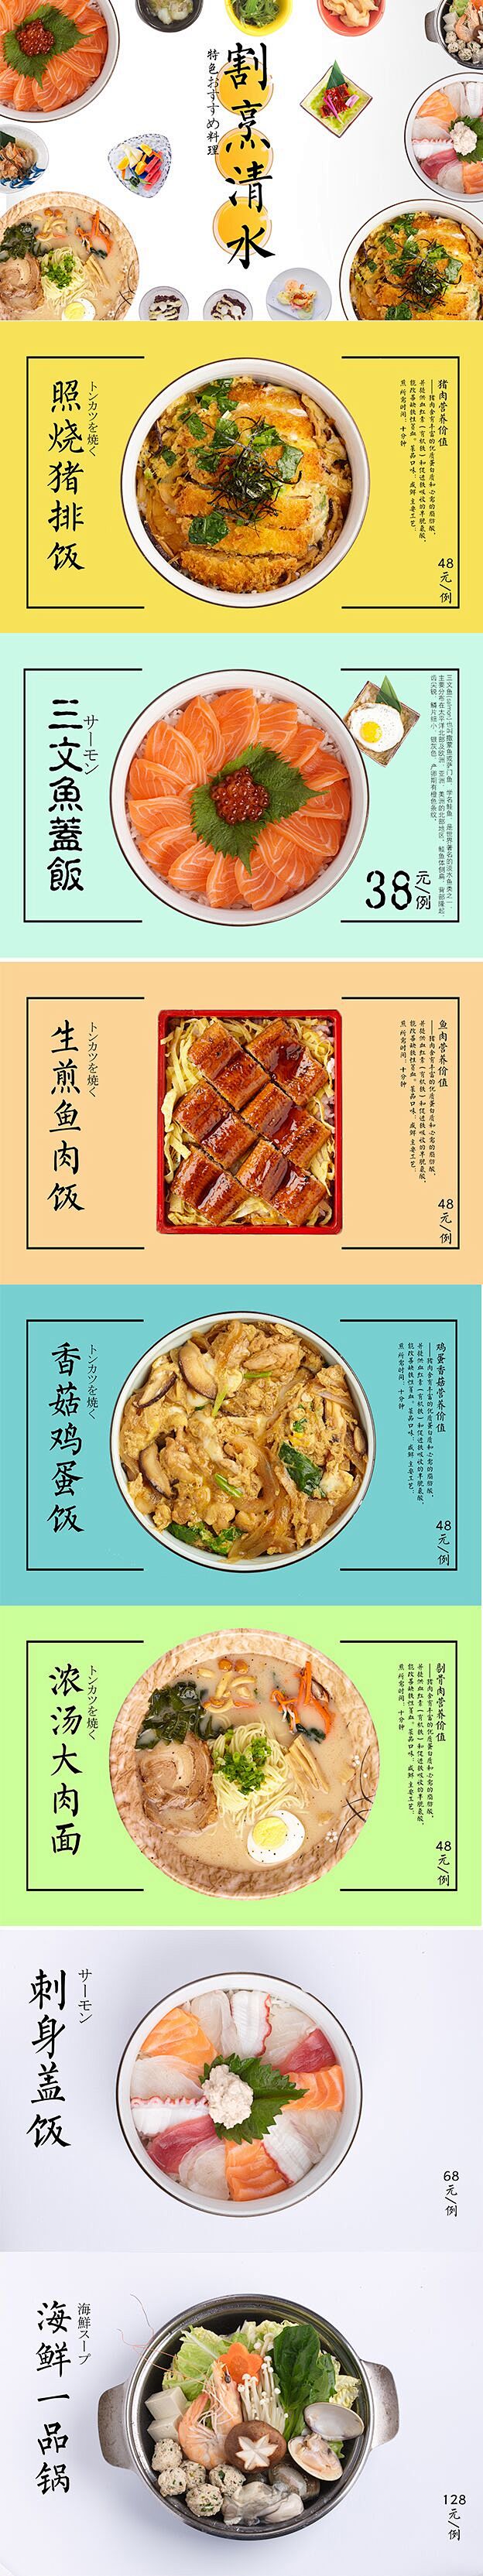 为一家日本料理制作的电视播放菜品系列

